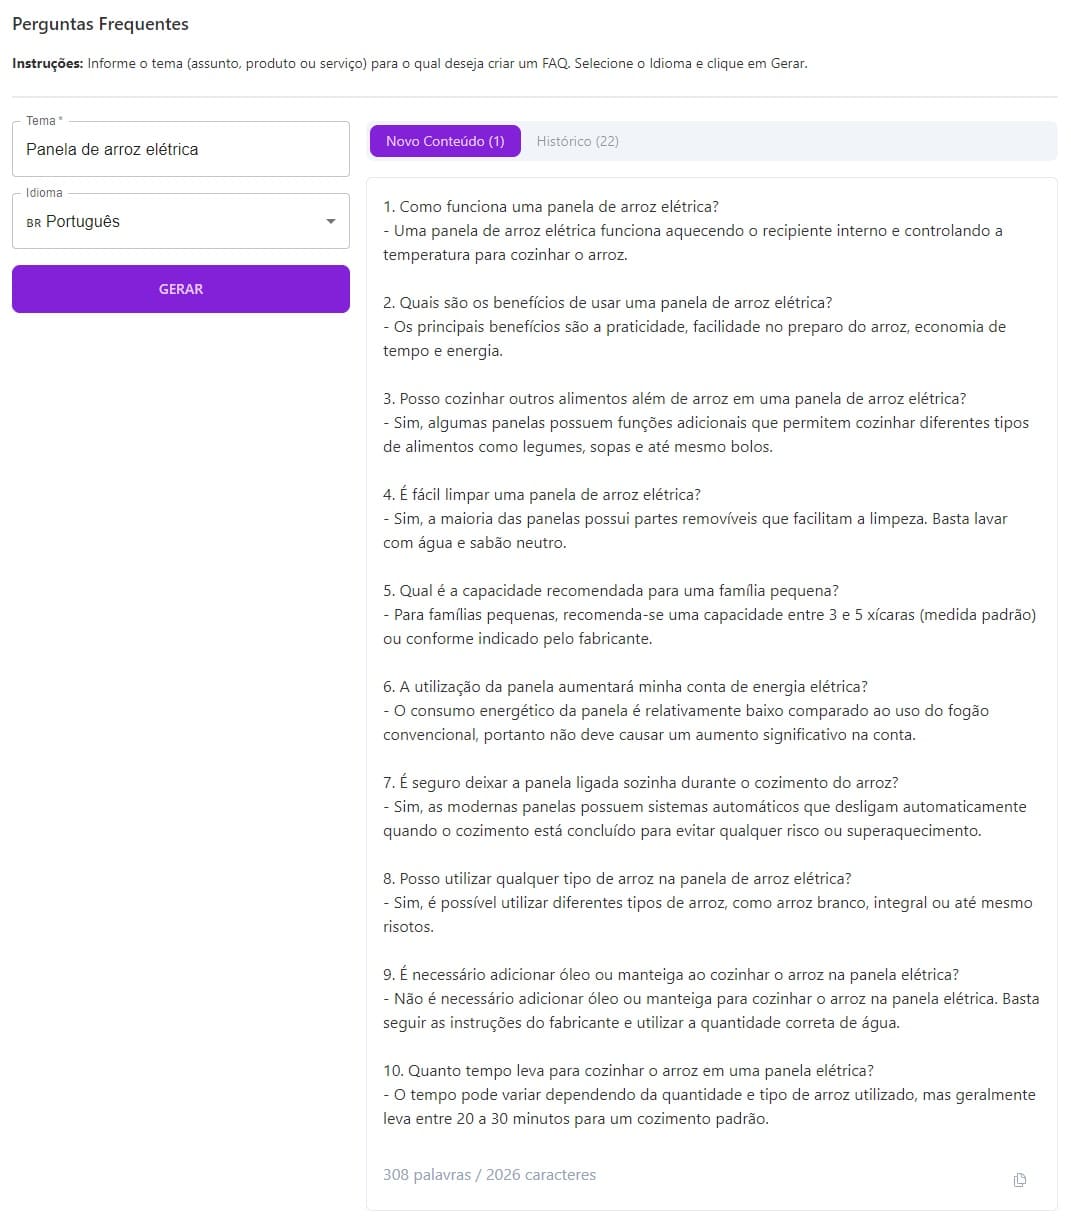 Print mostrando resultado de FAQ gerado pela Niara via template com perguntas e respostas